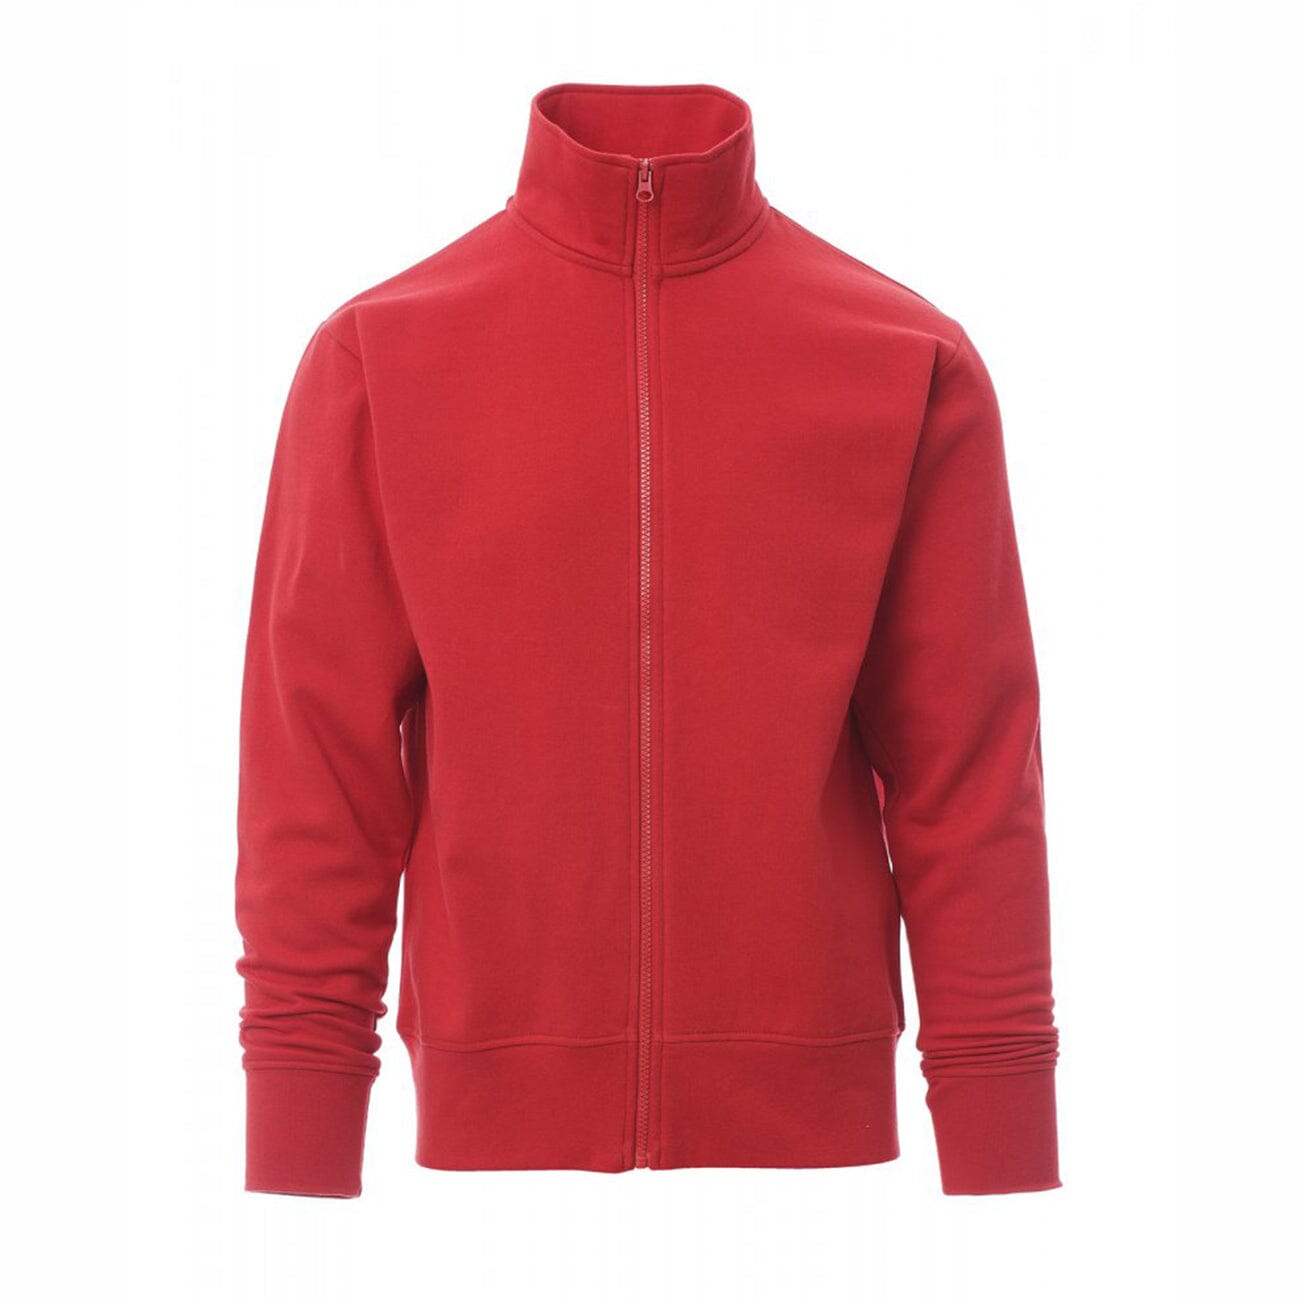 Premium Quality Red Soft Fleece Mock Neck Zip-Up Jacket For Men (120220)